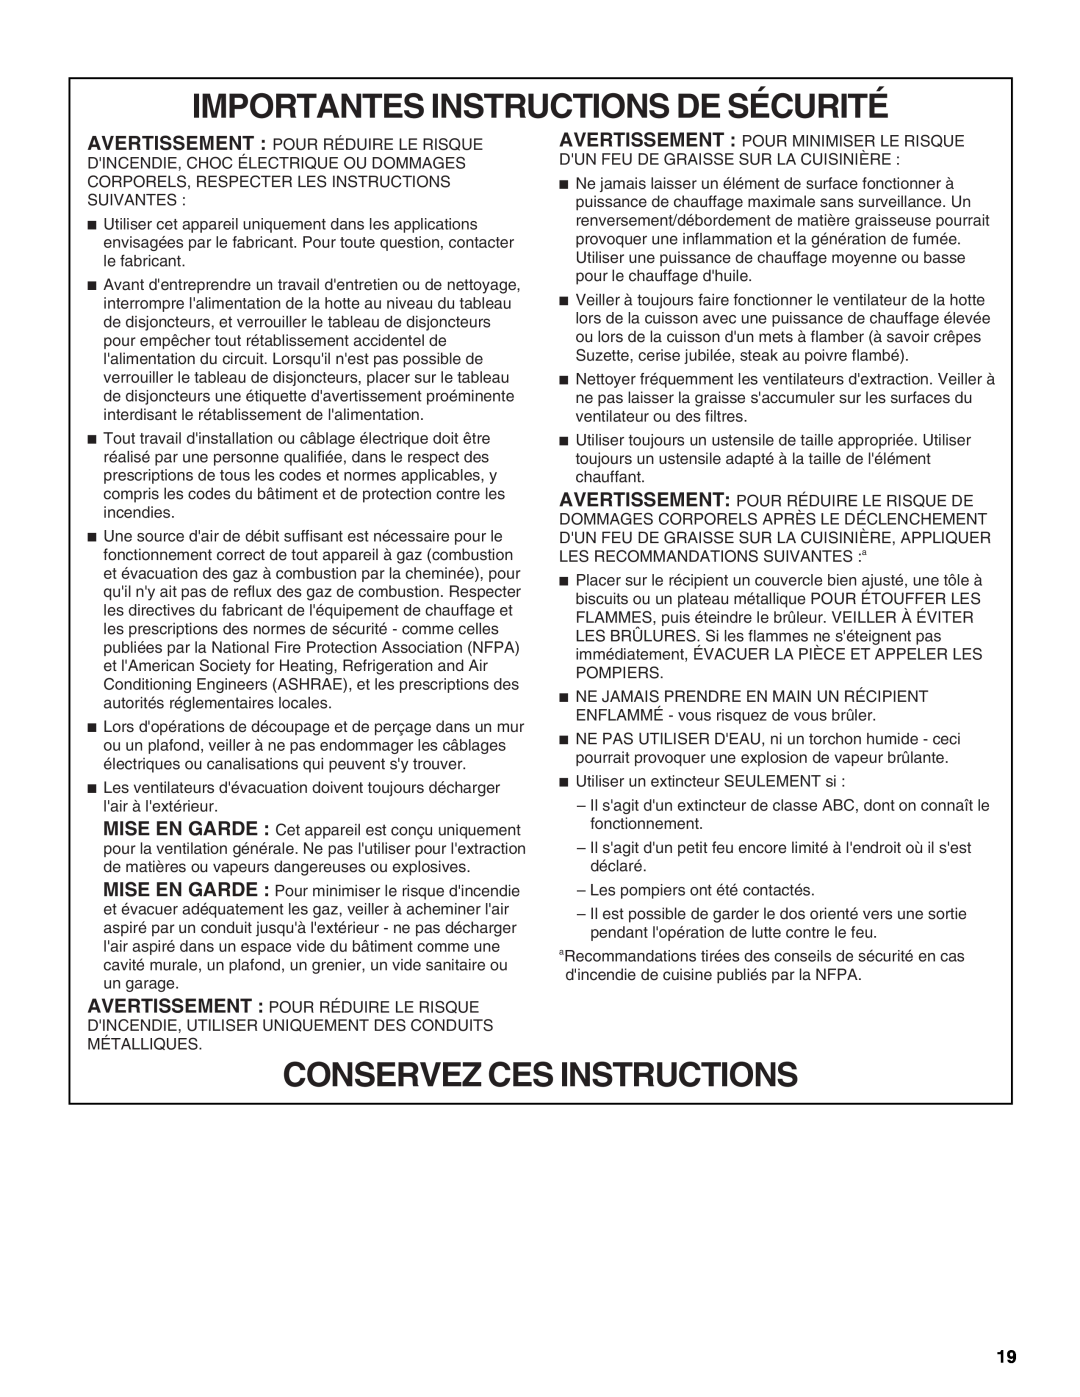 Jenn-Air W10201609B installation instructions Importantes Instructions De Sécurité, Conservez Ces Instructions 